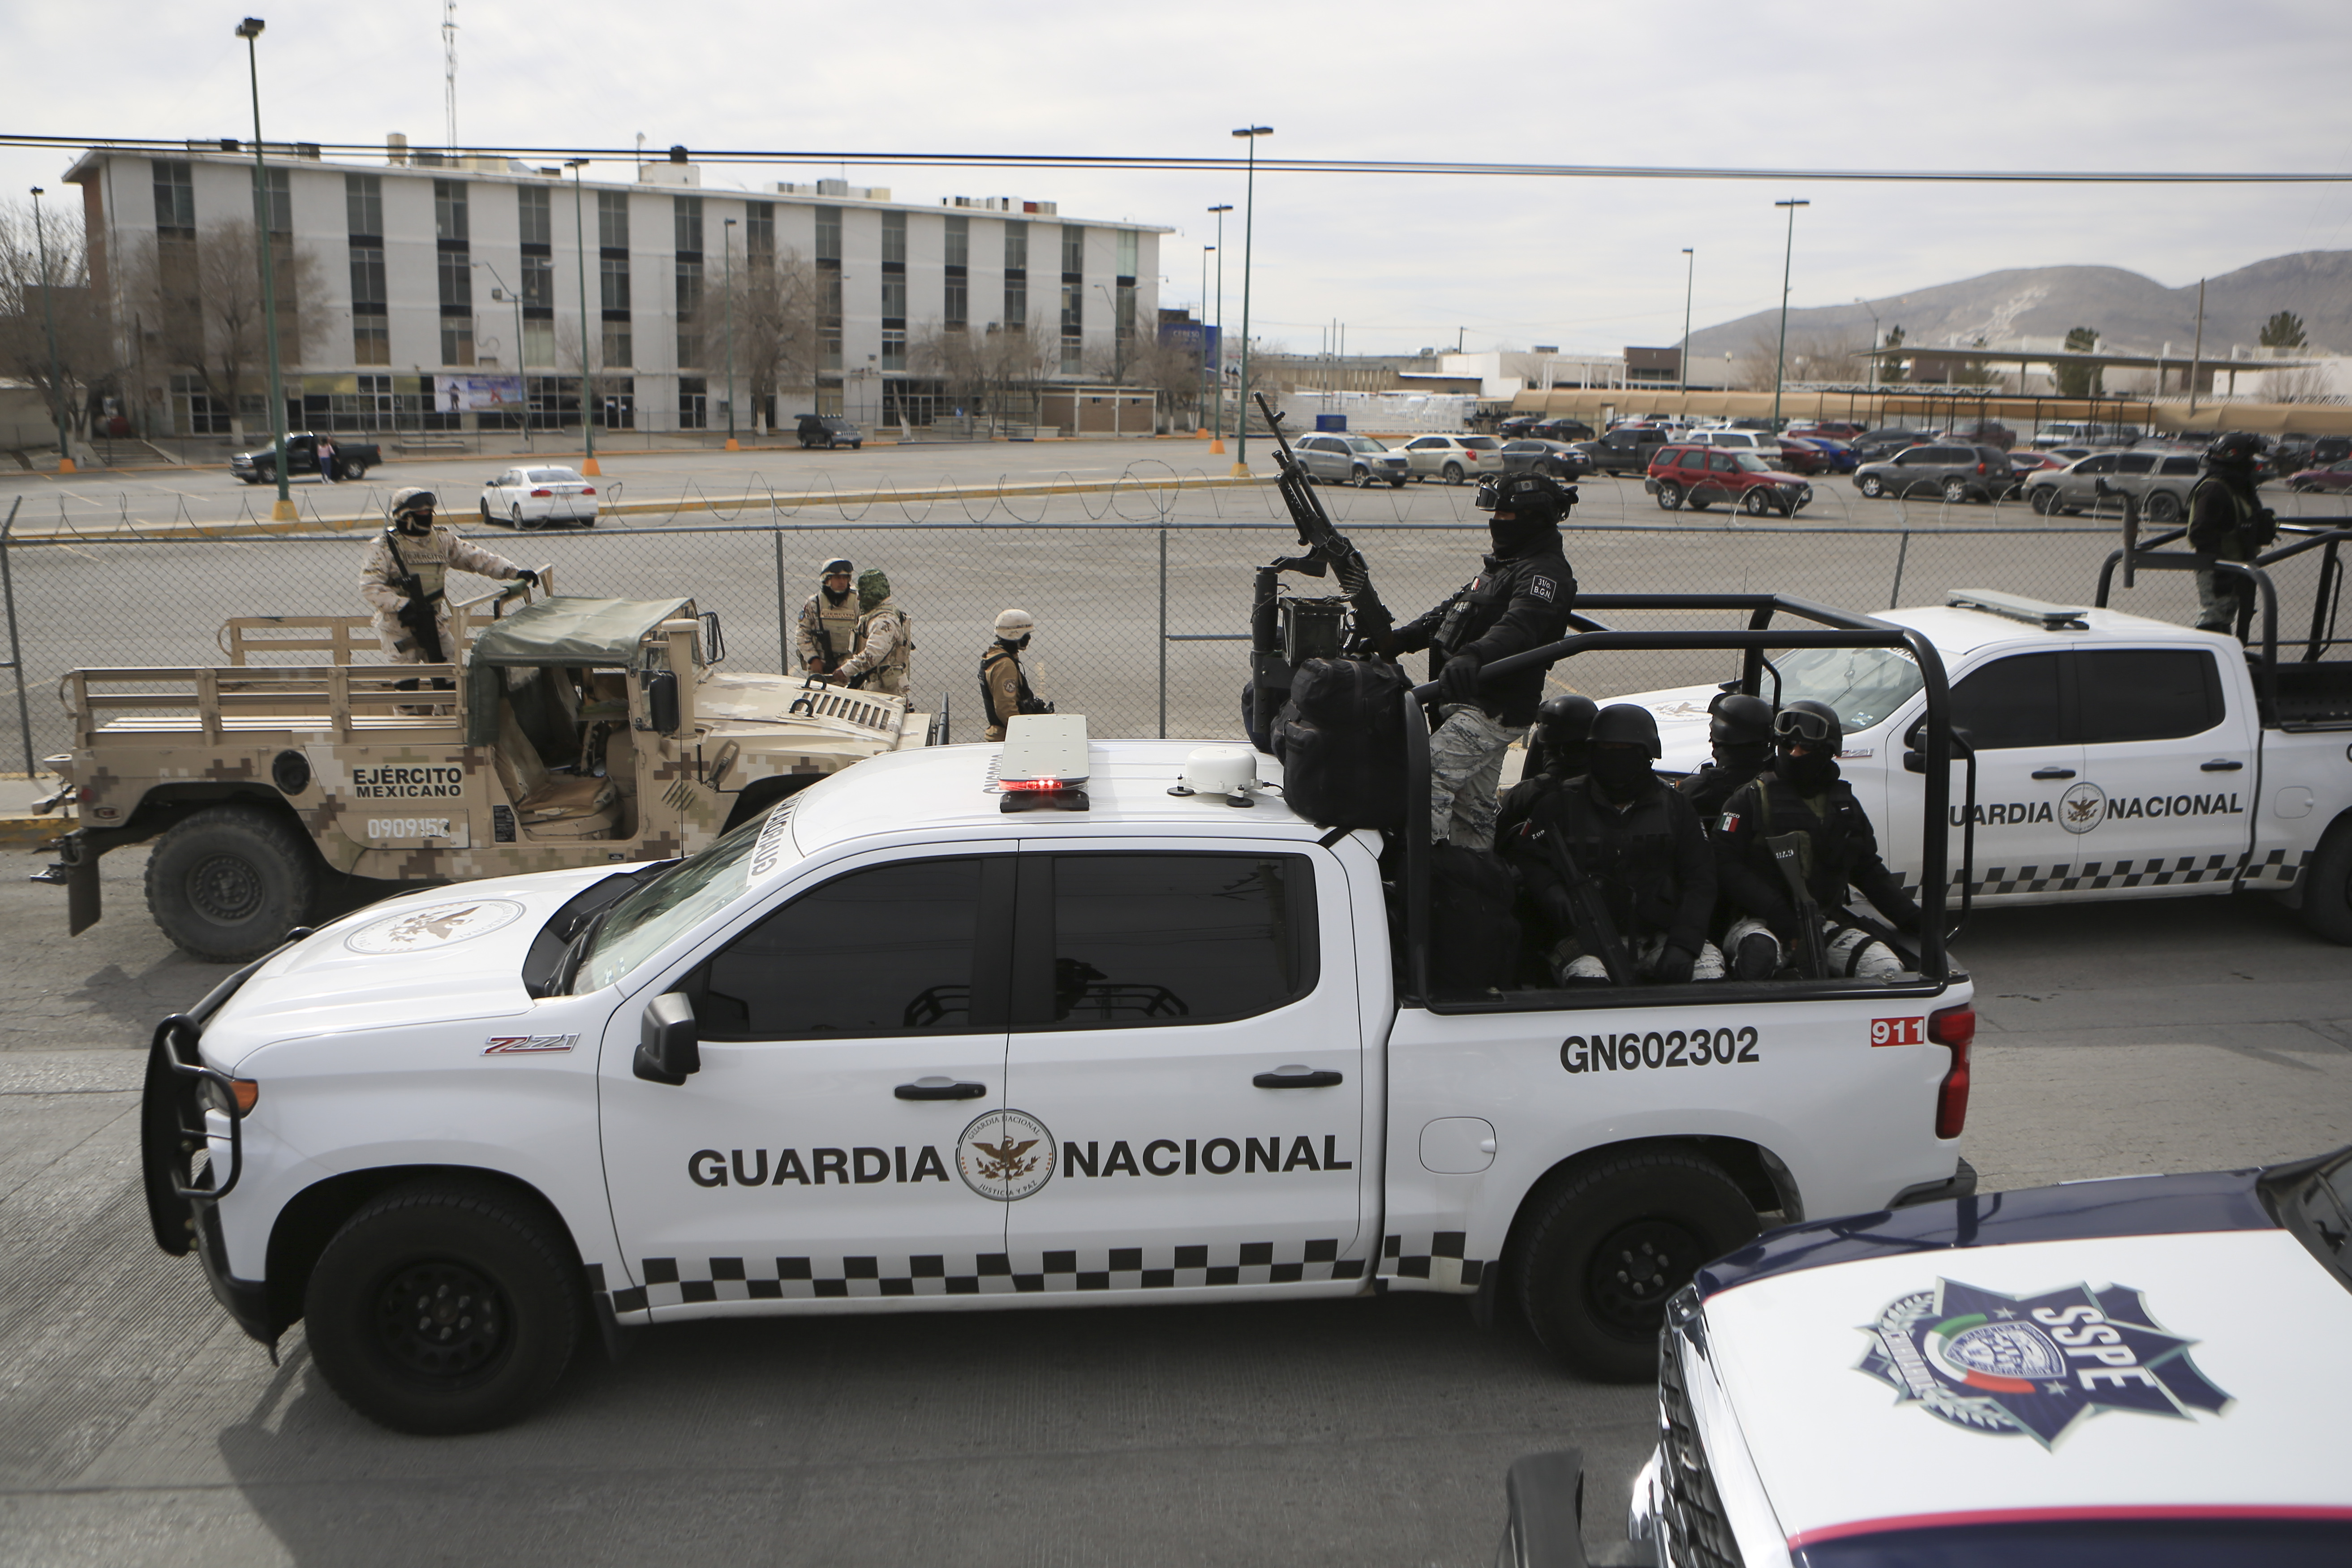 La Guardia Nacional es la institución que ahora está a cargo de las instalaciones 
(Foto: AP/Christian Chavez)